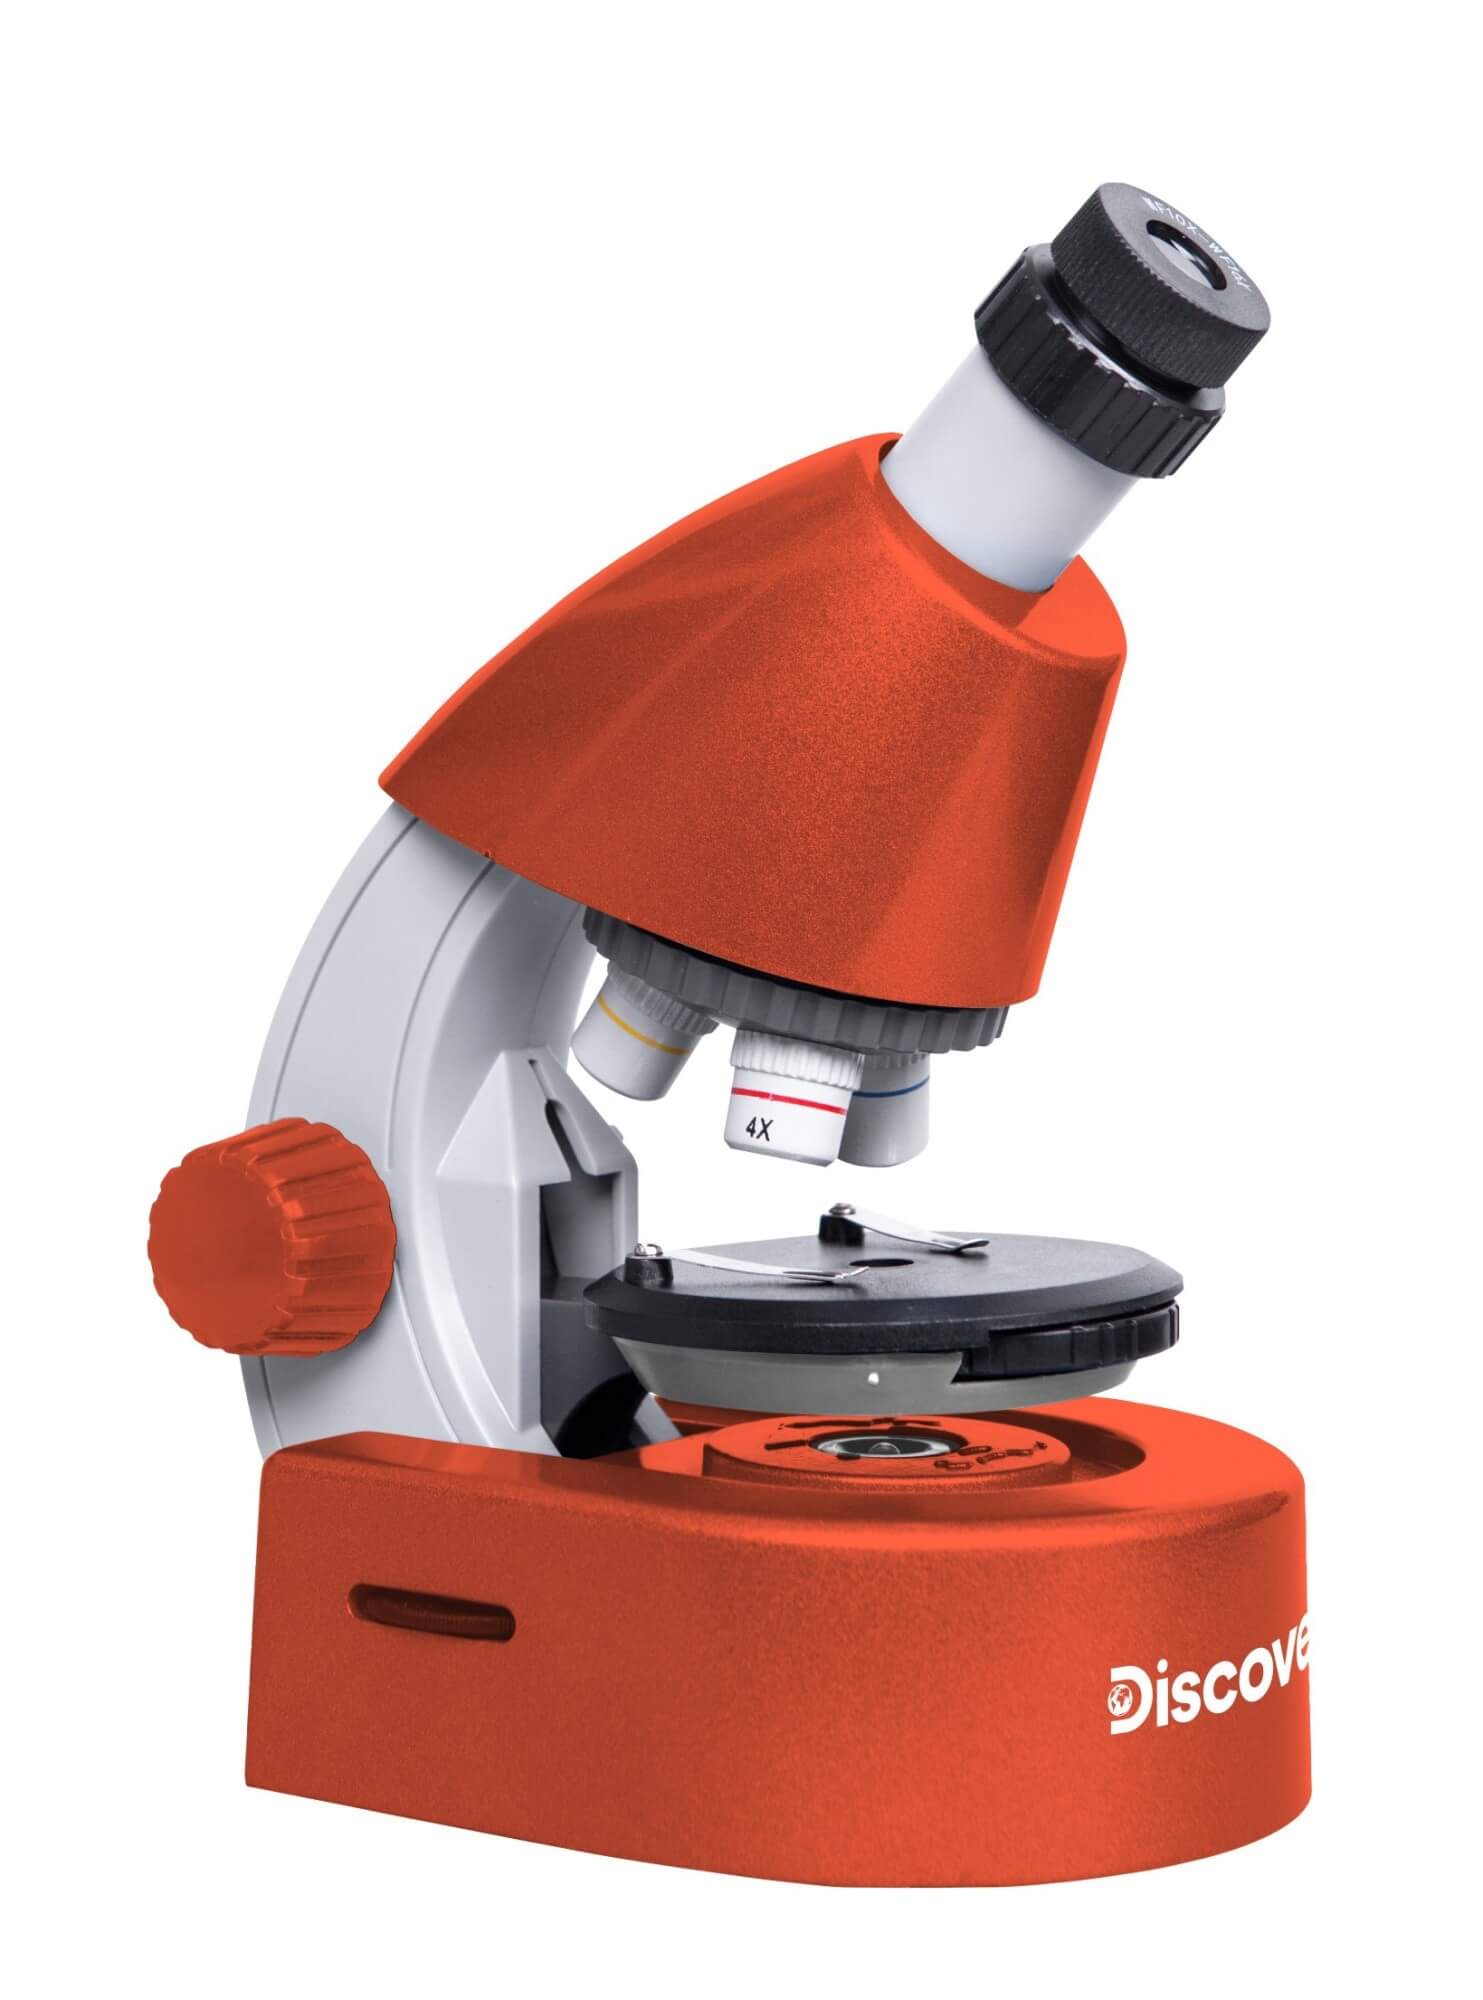 Detský mikroskop so vzdelávacou publikáciou Discovery Micro Terra